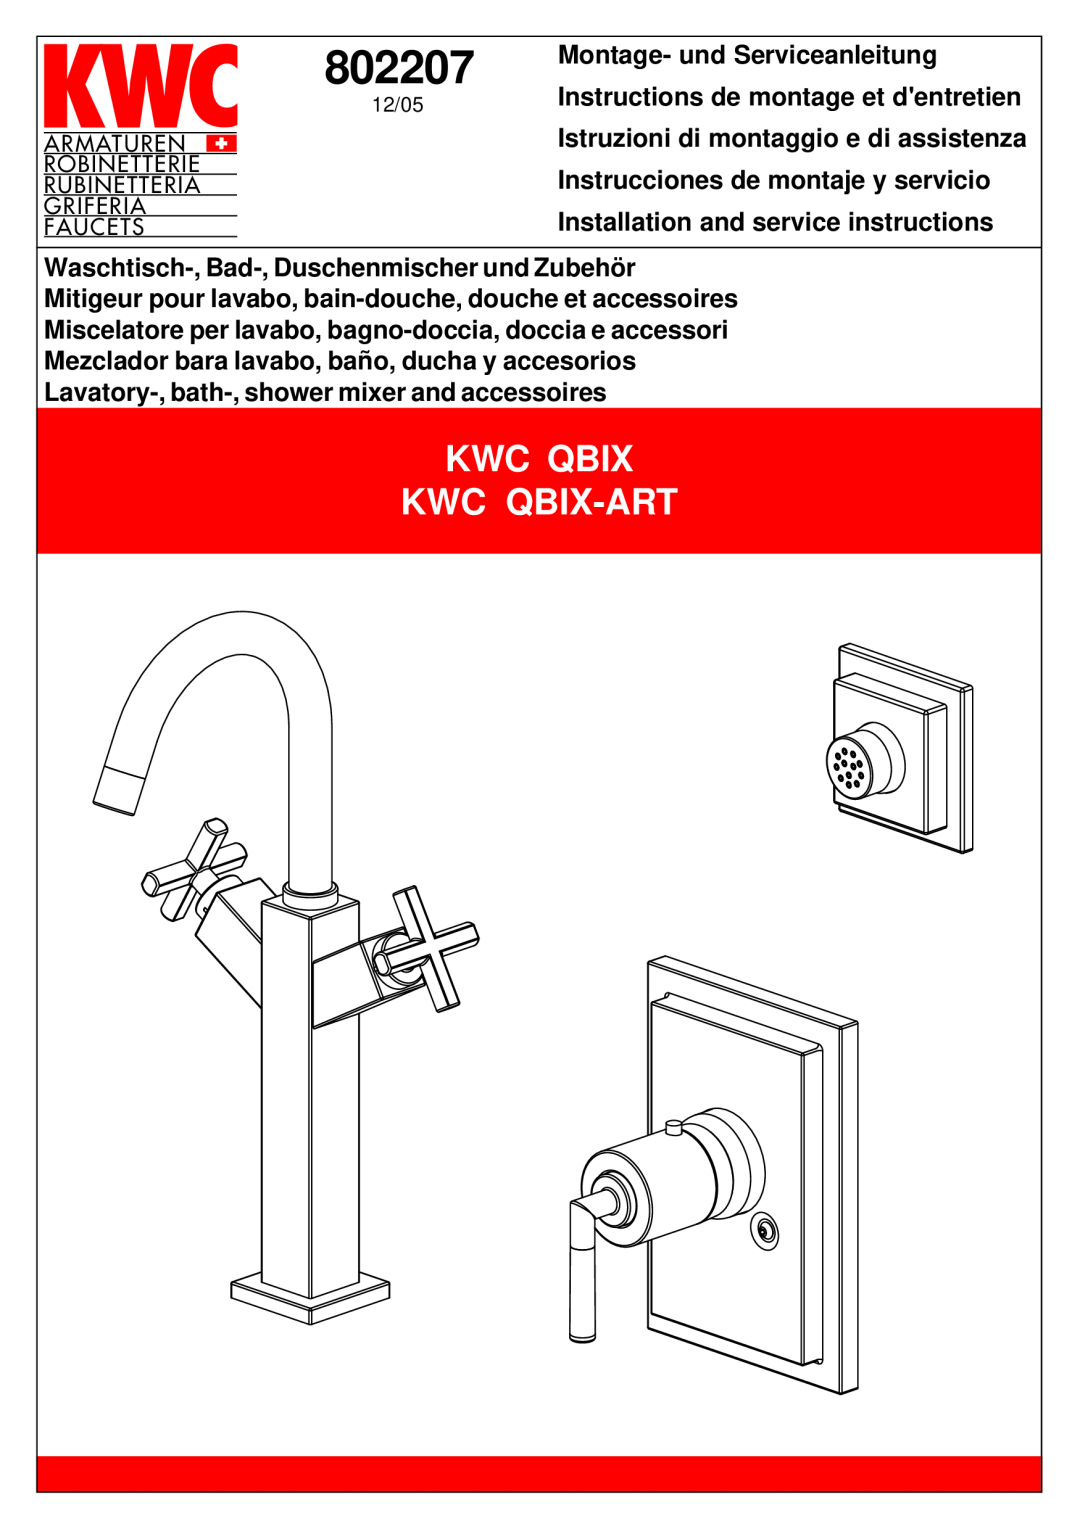 KWC KWC QBIX-ART manual 802207, Kwc Qbix Kwc Qbix-Art 